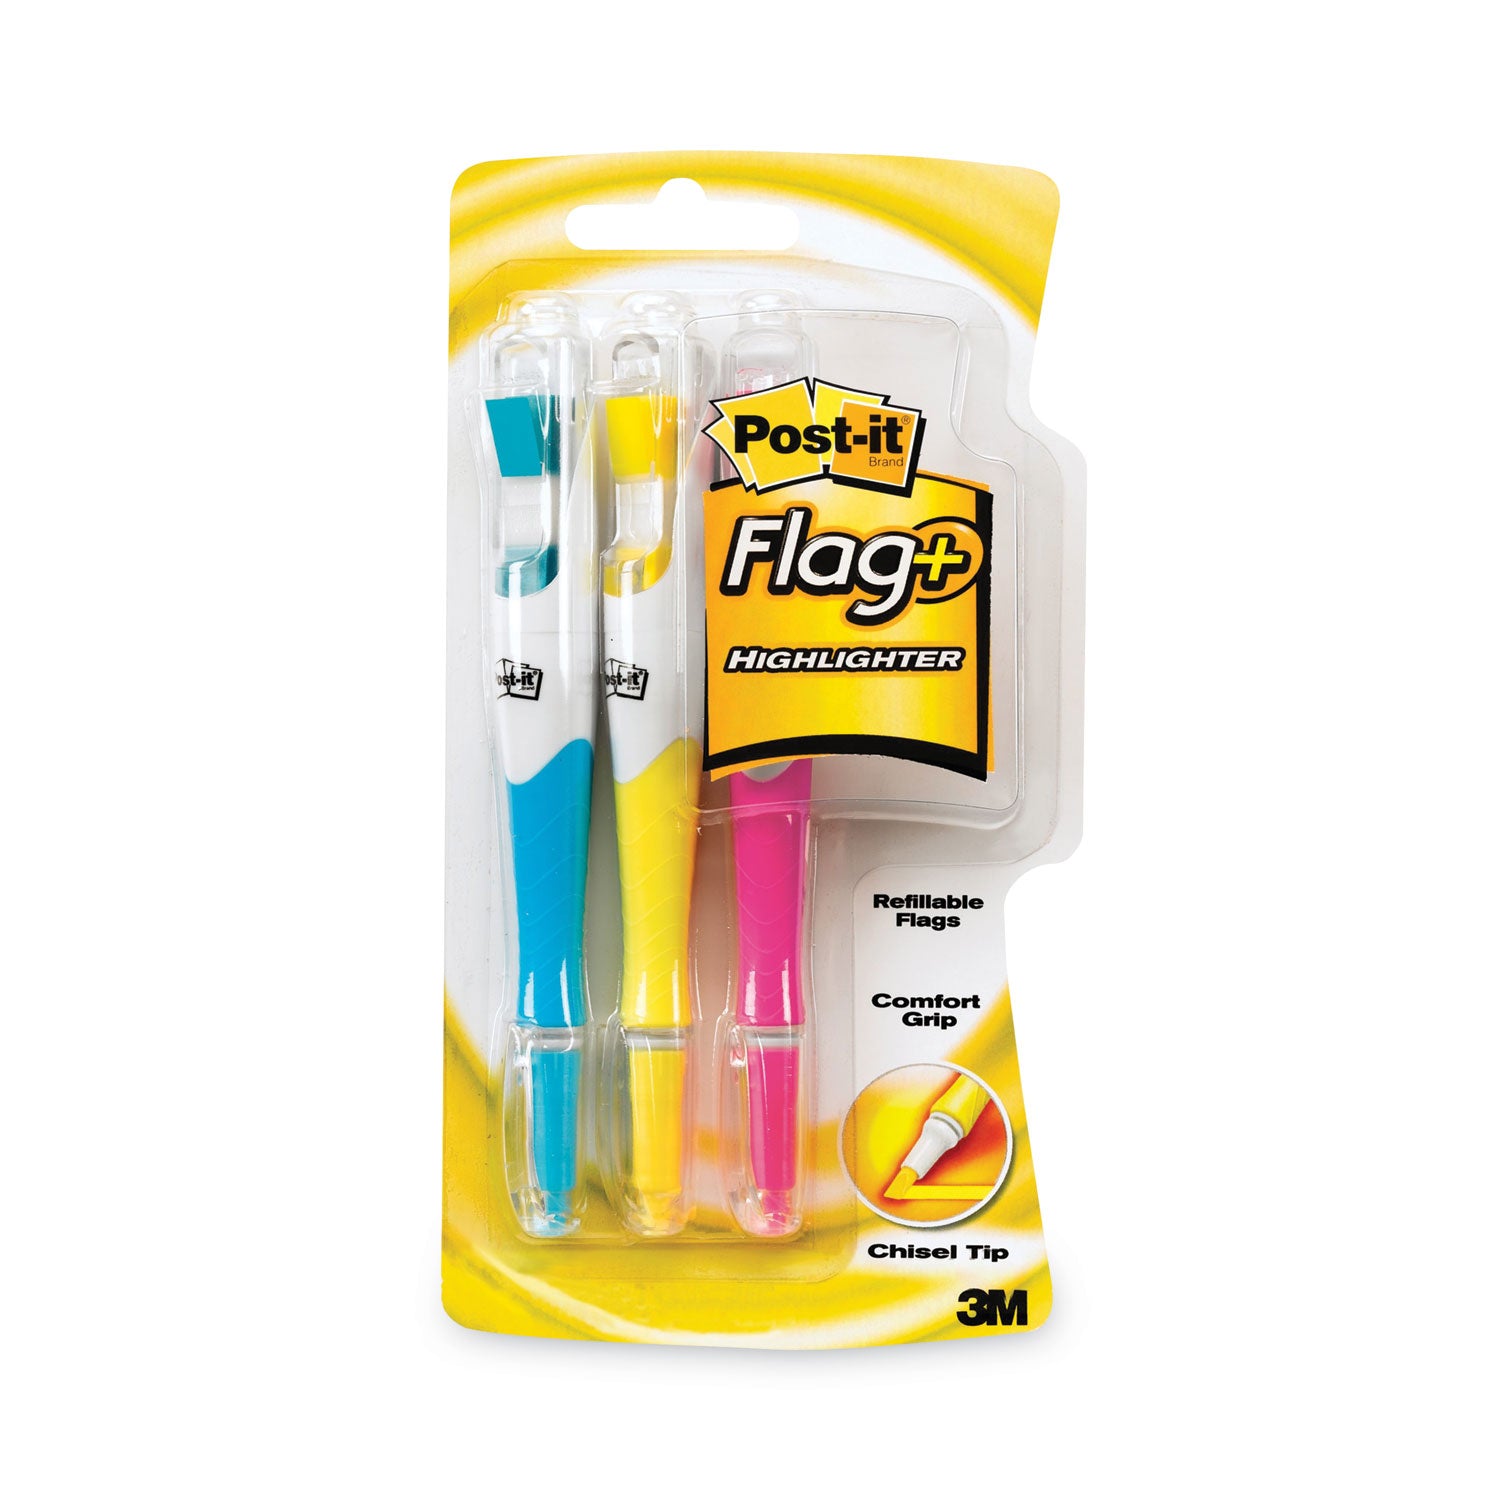 Flag+ Highlighter, Assorted Ink/Flag Colors, Chisel Tip, Assorted Barrel Colors, 3/Pack - 